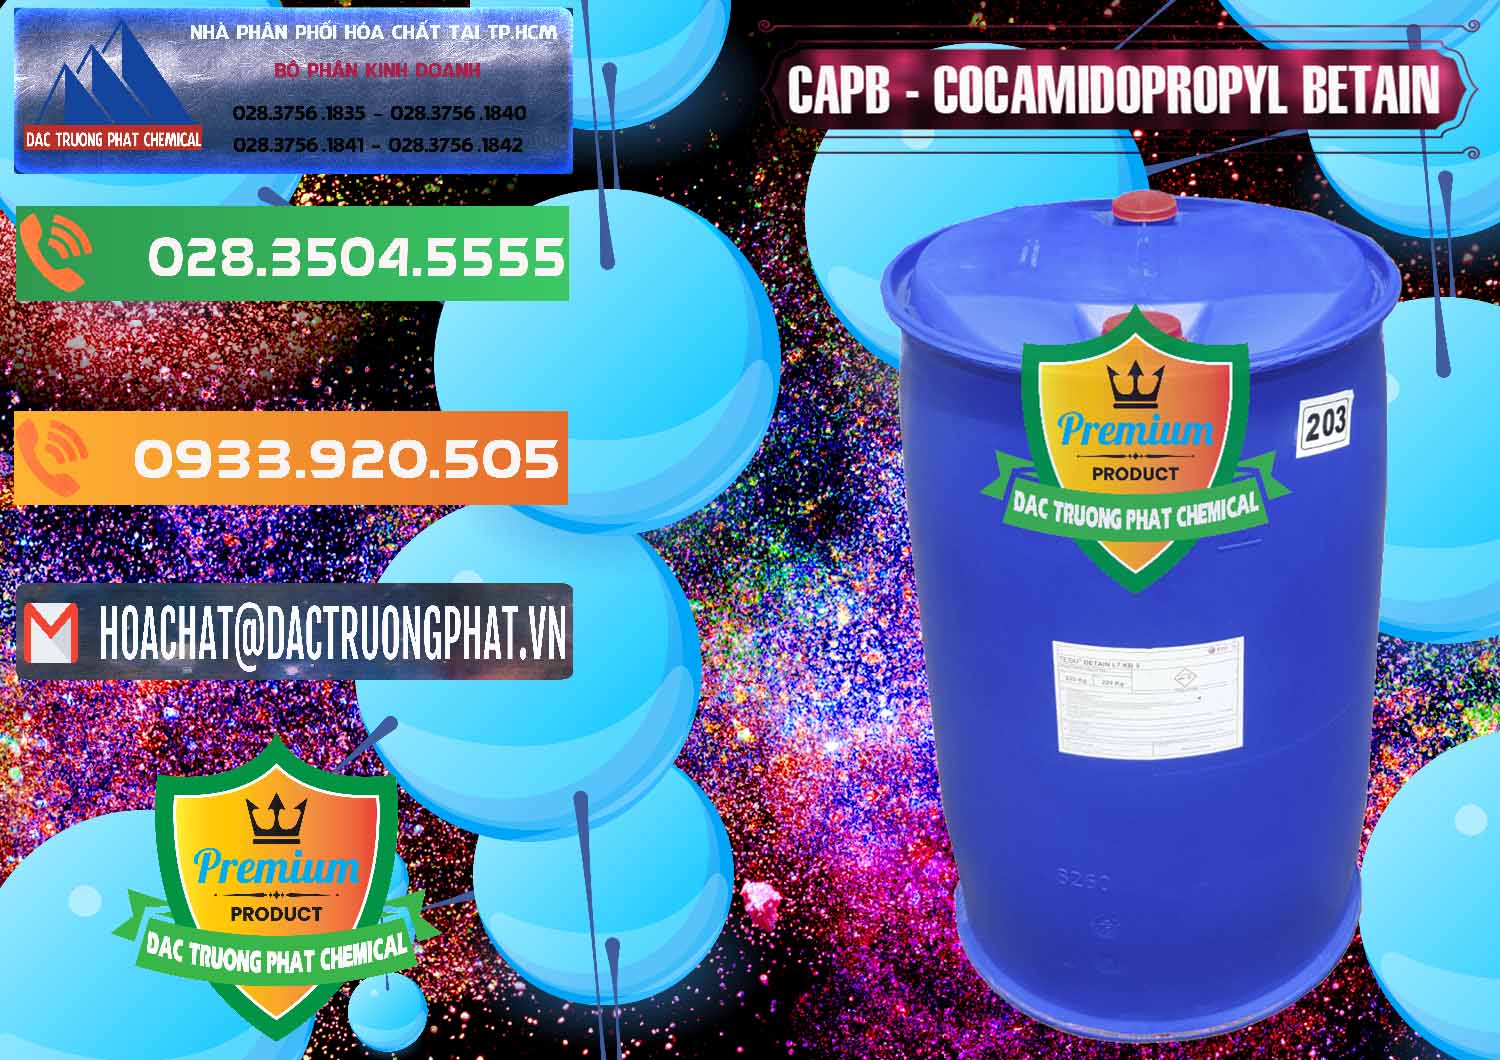 Nơi chuyên bán - cung cấp Cocamidopropyl Betaine - CAPB Tego Indonesia - 0327 - Cty chuyên nhập khẩu - cung cấp hóa chất tại TP.HCM - hoachatxulynuoc.com.vn